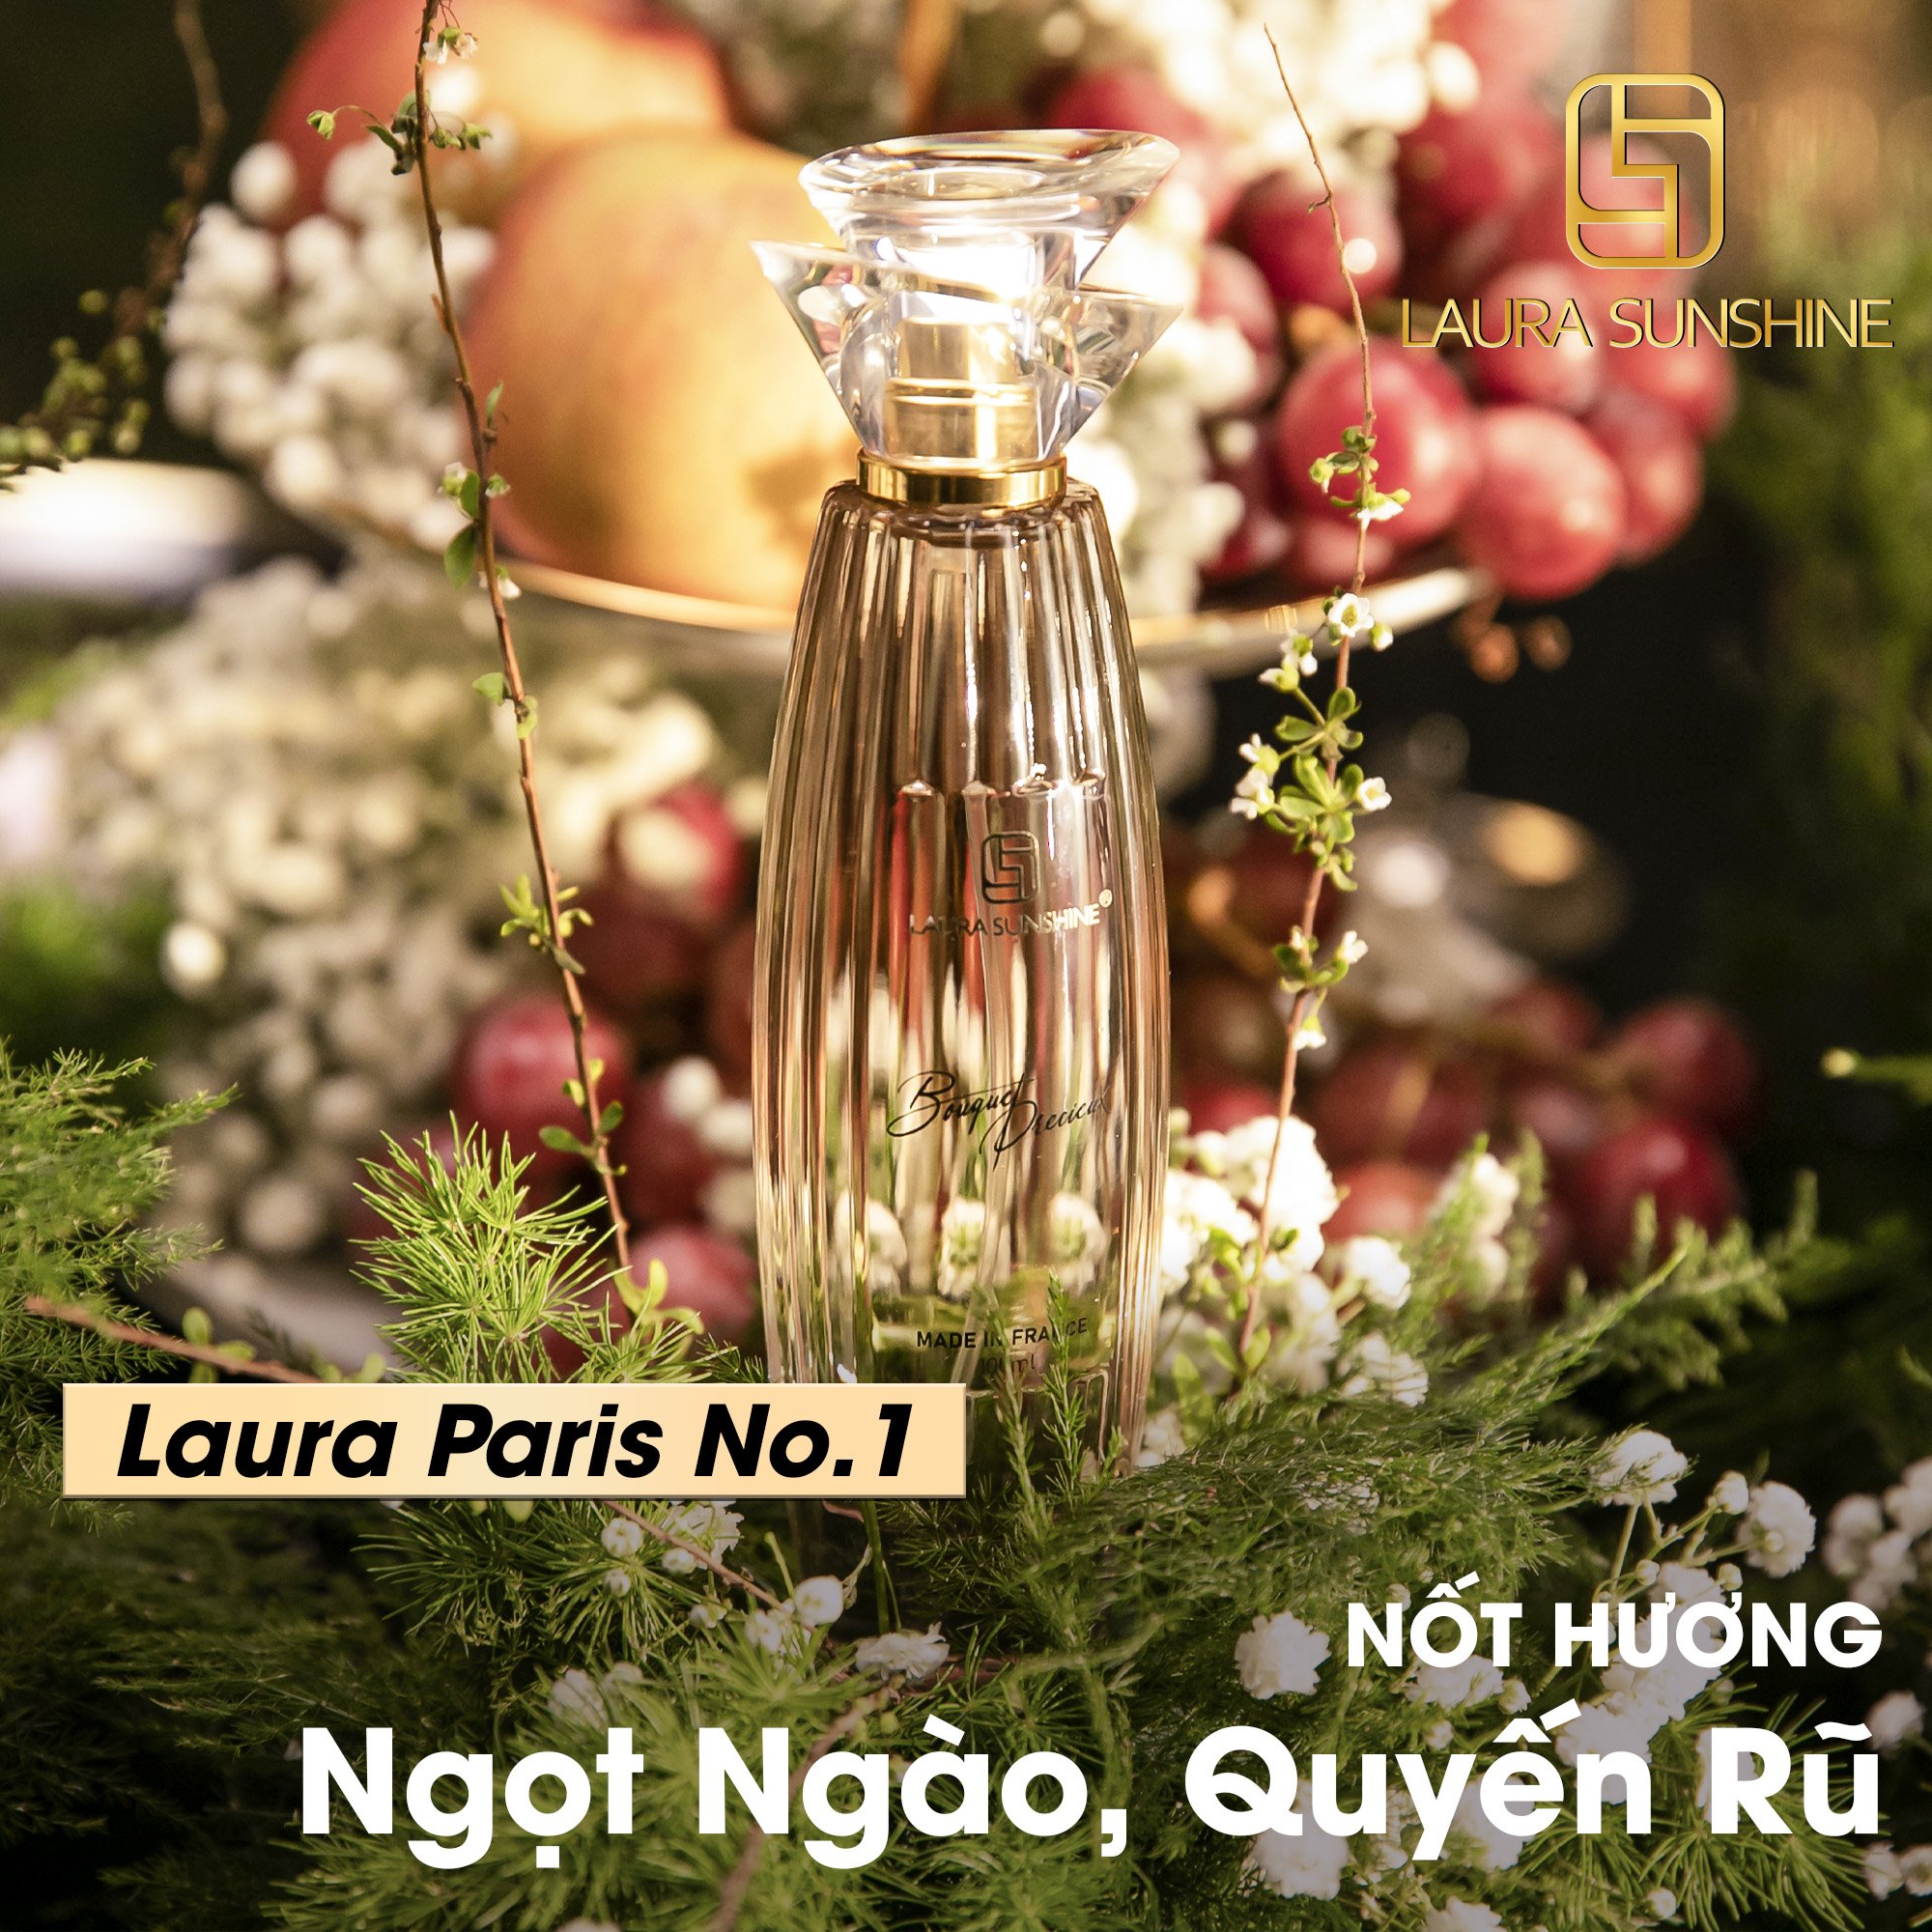 Nước hoa nữ Laura Paris #01 Bouquet Precieux - Eau De Parfum - 100ml - Laura Sunshine